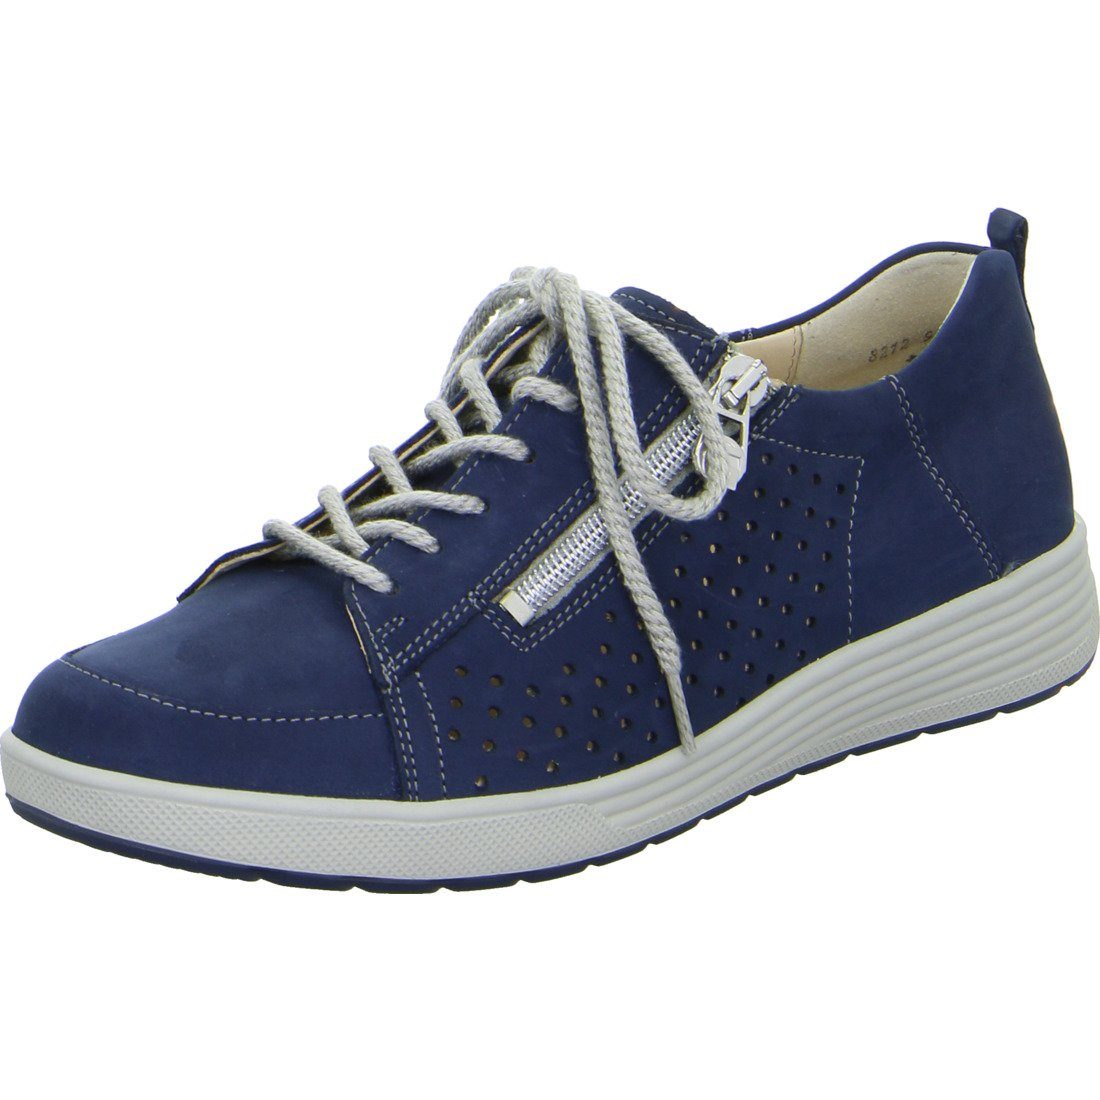 Preis und Auswahl an Ganter Ganter Kerstin blau 048899 Nubuk - Schnürschuh Schuhe, Schnürschuh